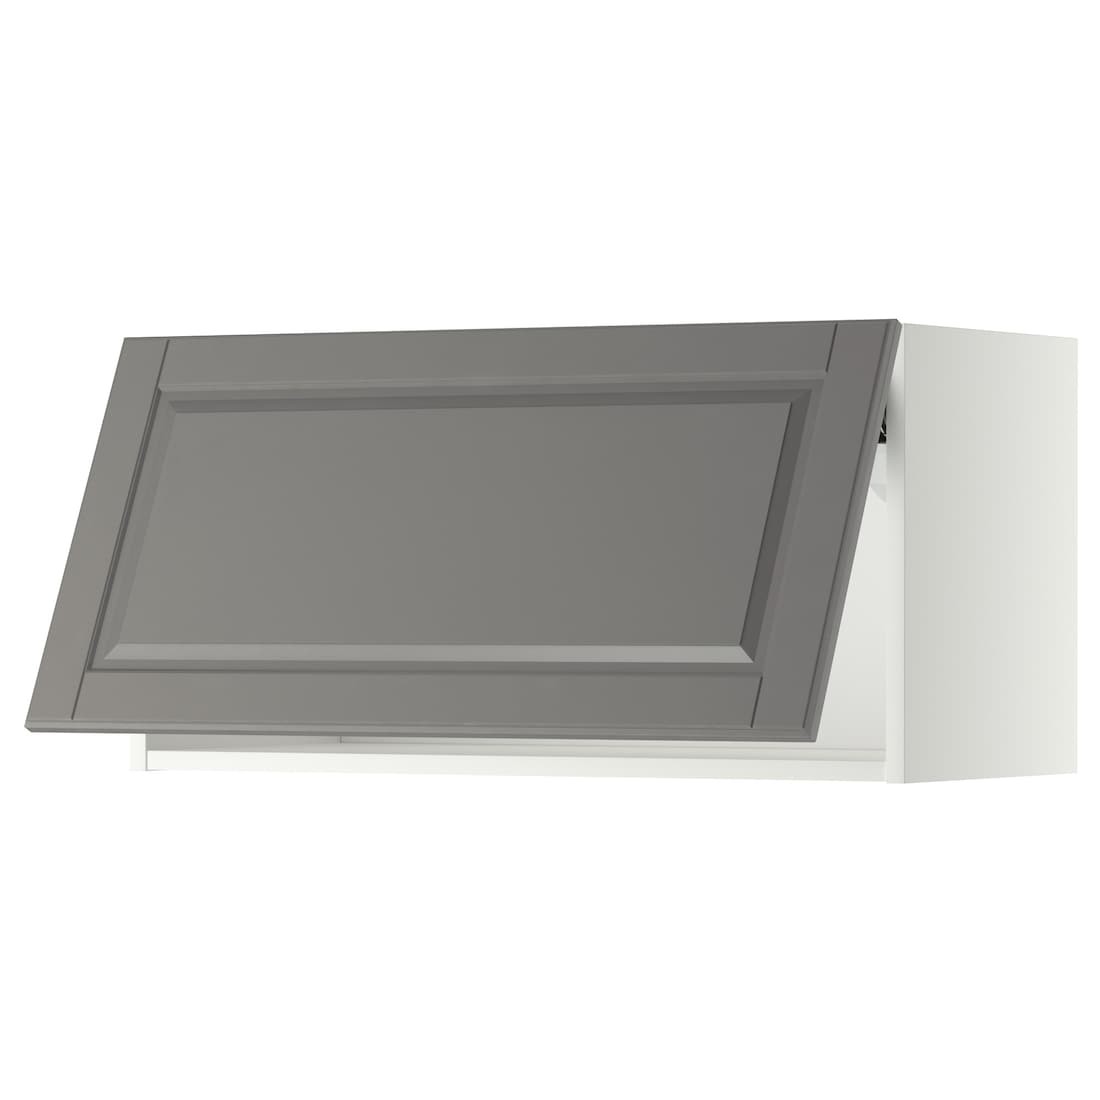 METOD МЕТОД Навесной горизонтальный шкаф, белый / Bodbyn серый, 80x40 см